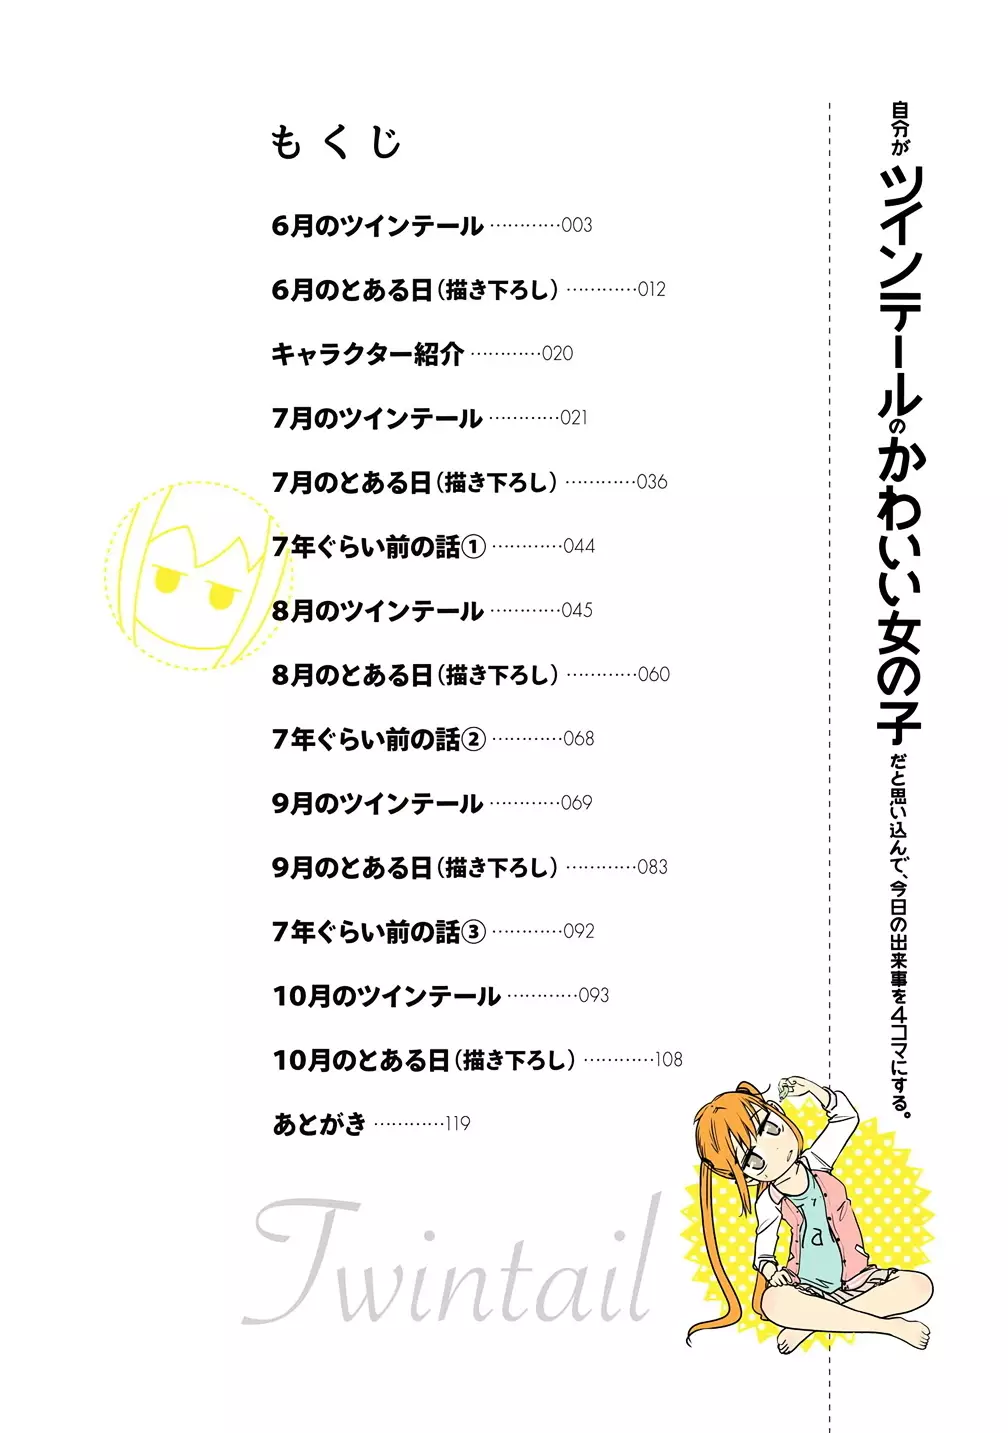 Jibun Ga Twintail No Kawaii Onnanoko Da To Omoikonde, Kyou No Dekigoto Wo 4Koma Ni Suru - 1 page 4